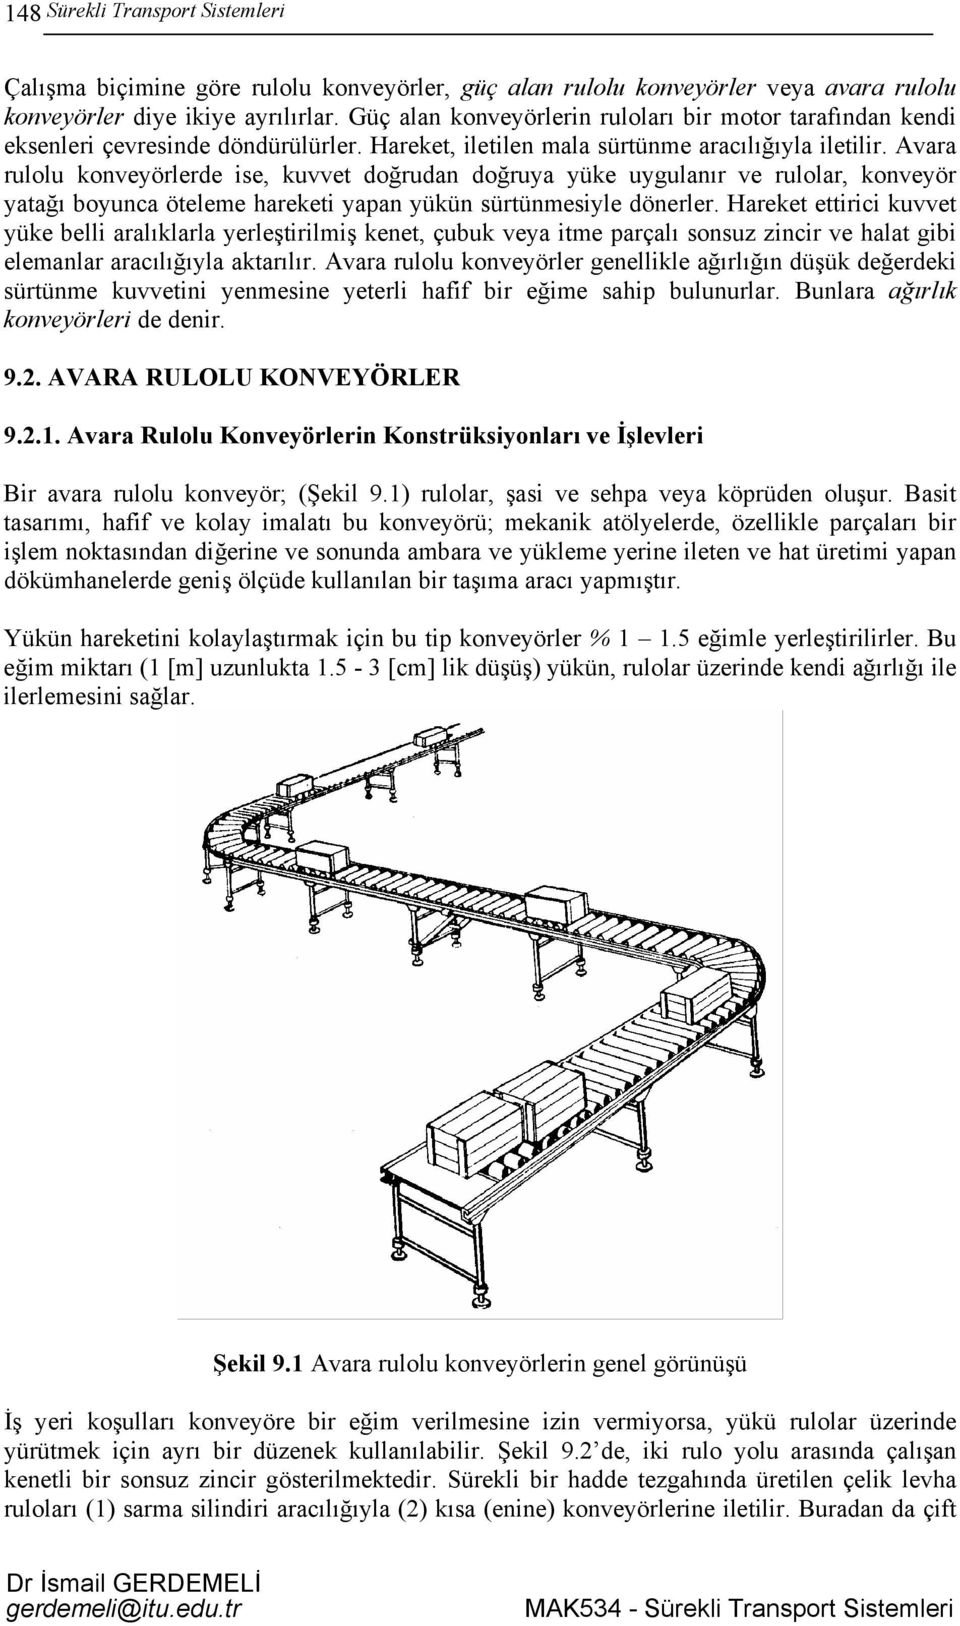 Avara rulolu konveyörlerde ise, kuvvet doğrudan doğruya yüke uygulanır ve rulolar, konveyör yatağı boyunca öteleme hareketi yapan yükün sürtünmesiyle dönerler.